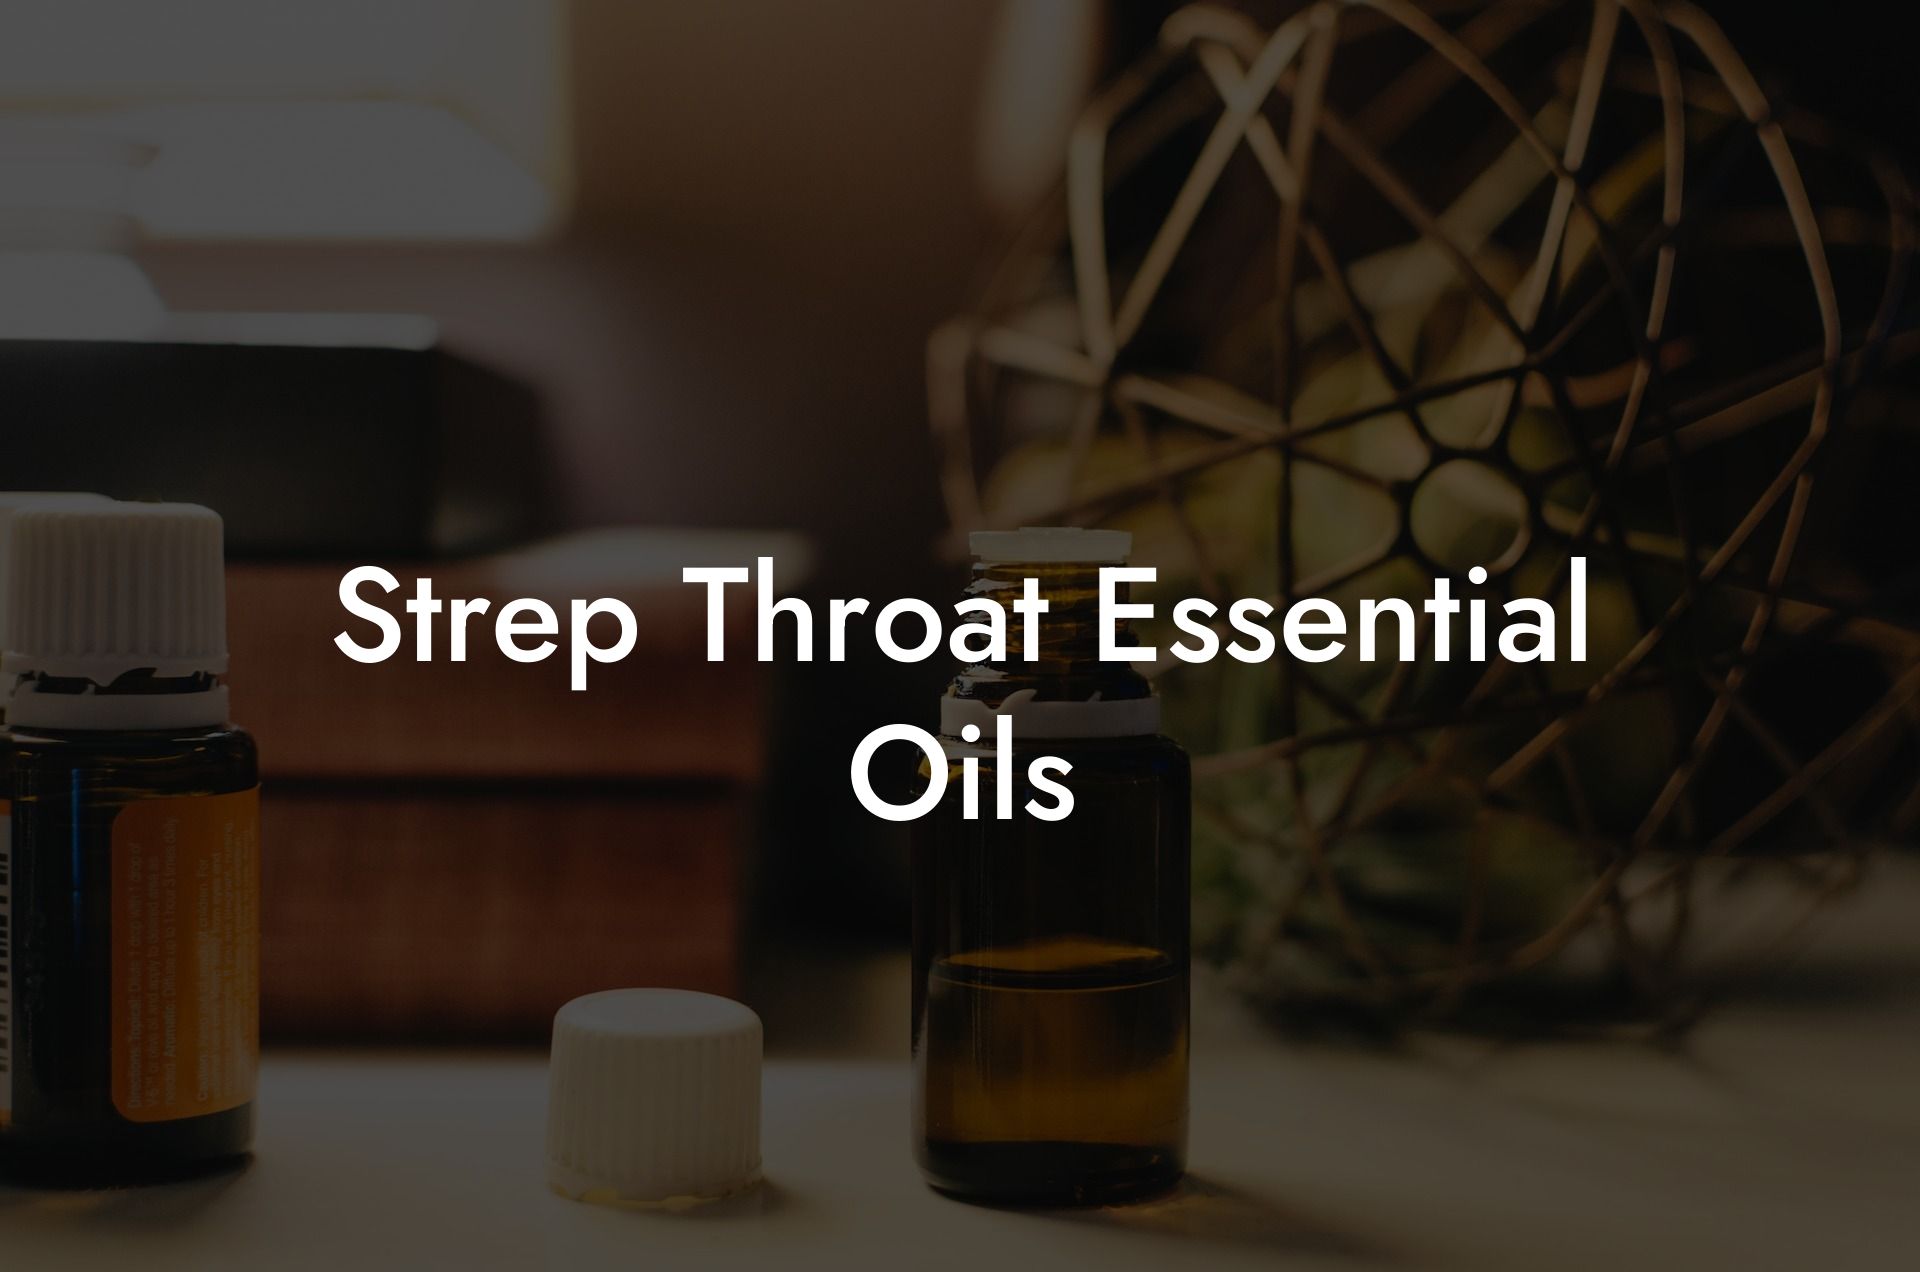 Strep Throat Essential Oils